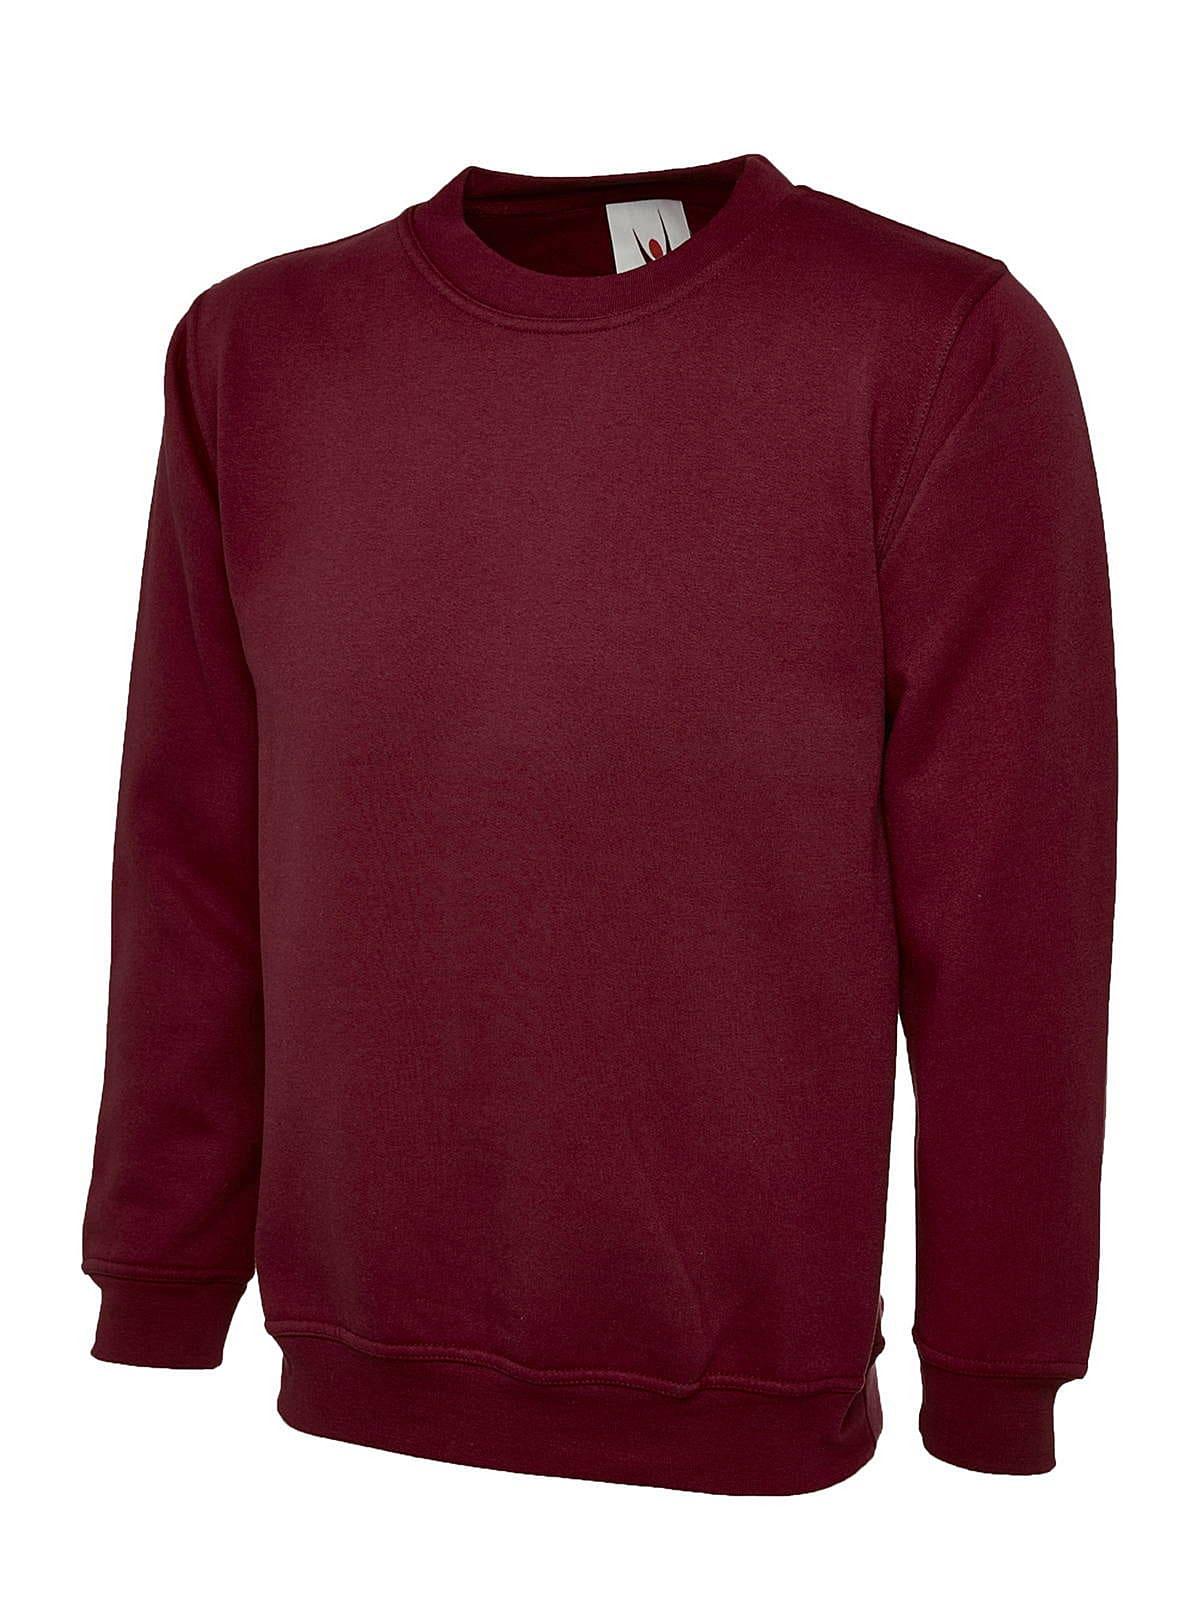 Uneek 300GSM Classic Sweatshirt in Maroon (Product Code: UC203)